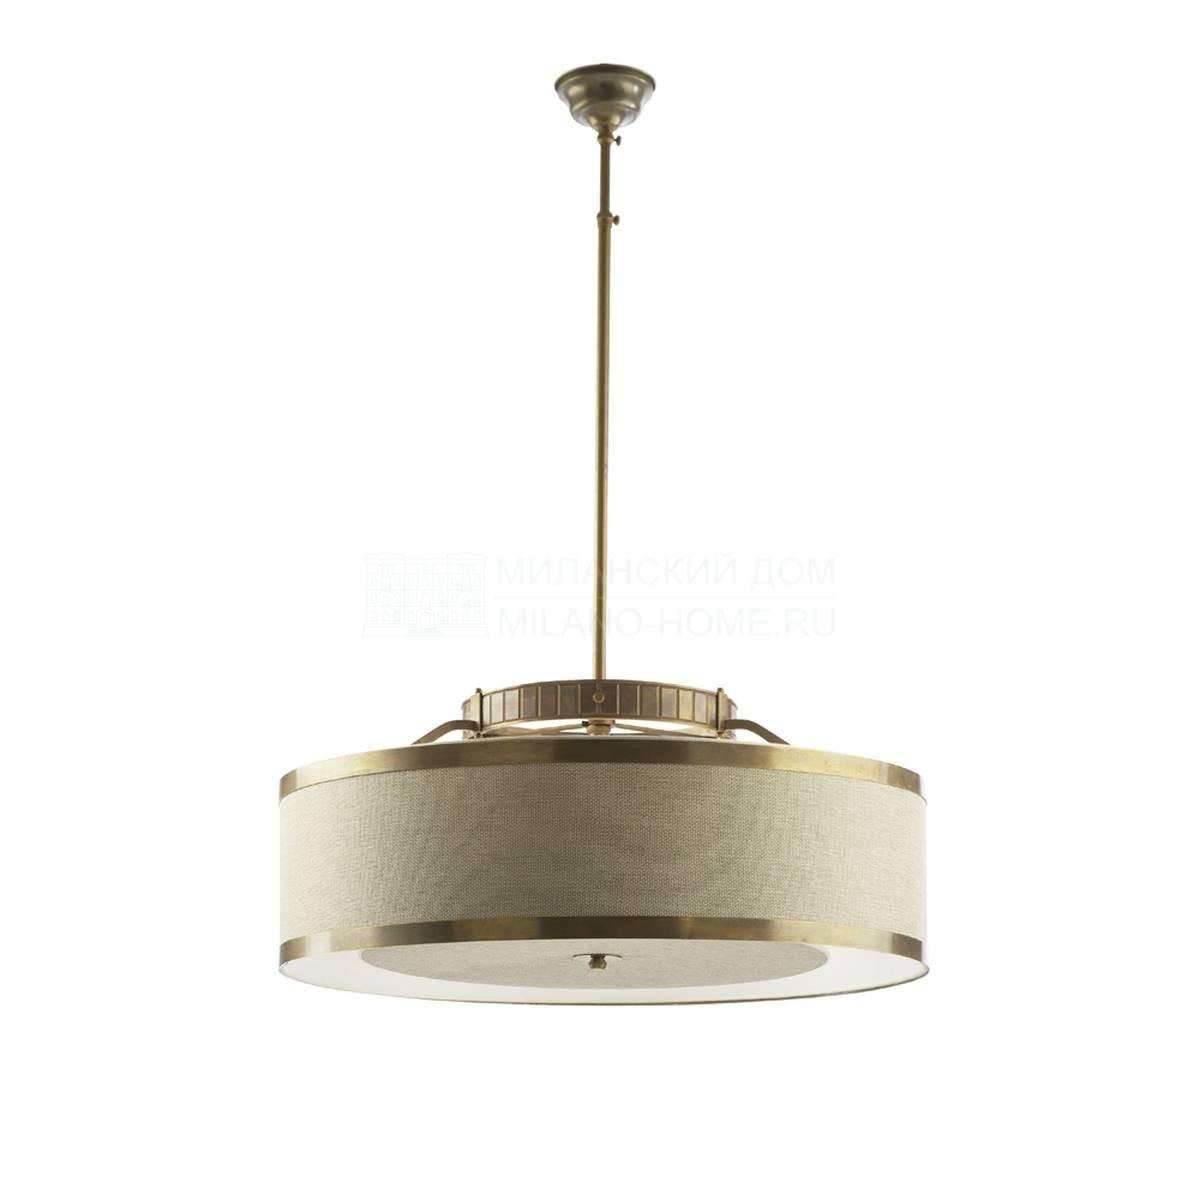 Потолочный светильник Altea suspension из Италии фабрики MARIONI